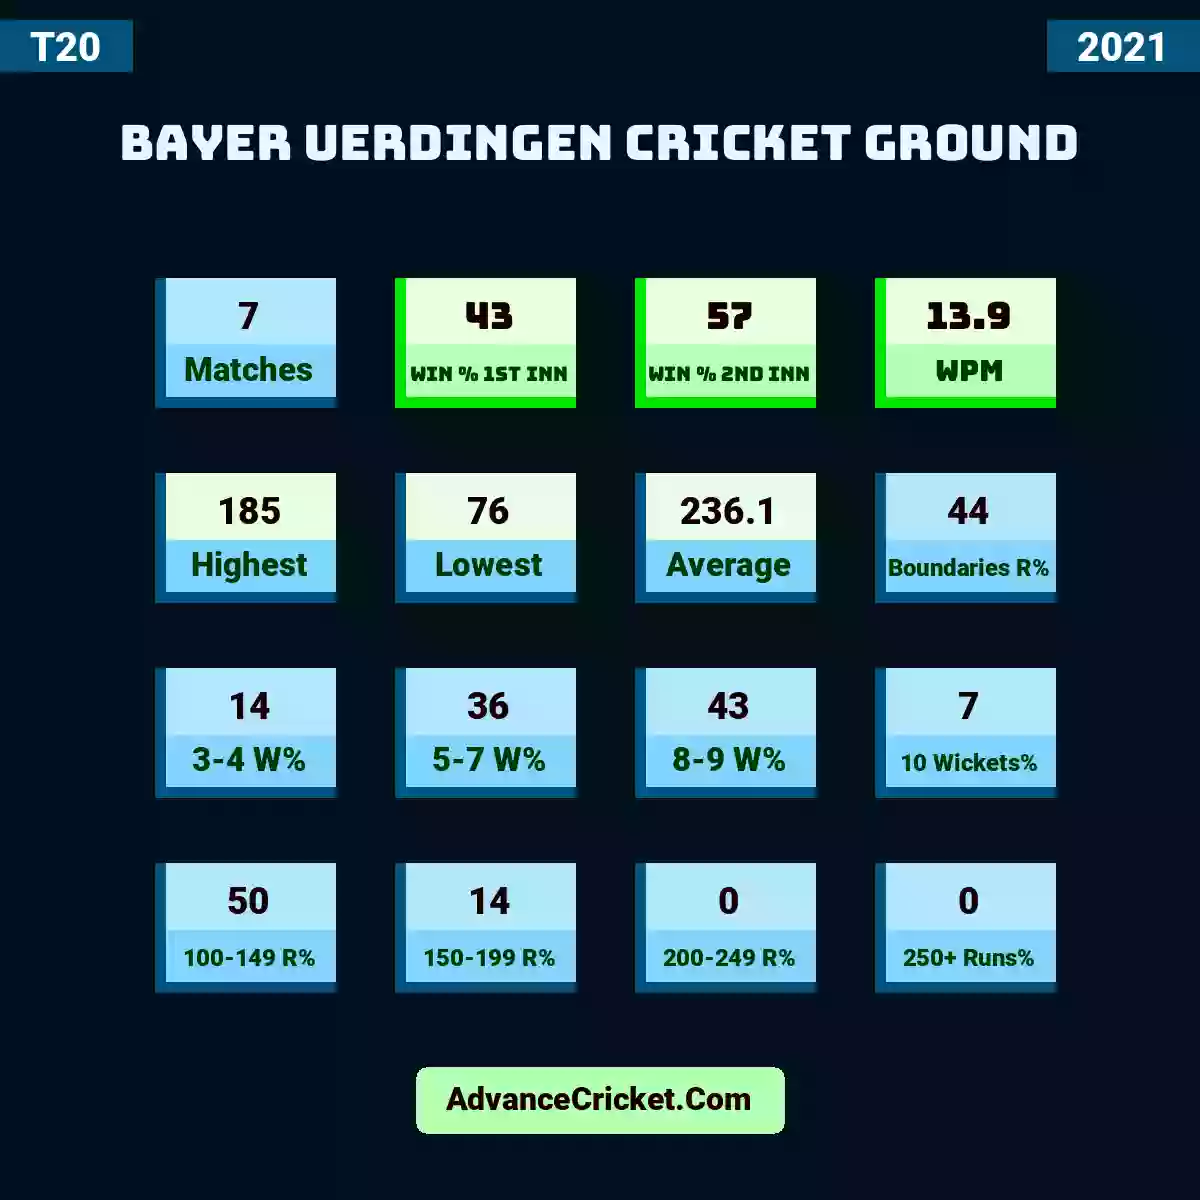 Image showing Bayer Uerdingen Cricket Ground with Matches: 7, Win % 1st Inn: 43, Win % 2nd Inn: 57, WPM: 13.9, Highest: 185, Lowest: 76, Average: 236.1, Boundaries R%: 44, 3-4 W%: 14, 5-7 W%: 36, 8-9 W%: 43, 10 Wickets%: 7, 100-149 R%: 50, 150-199 R%: 14, 200-249 R%: 0, 250+ Runs%: 0.